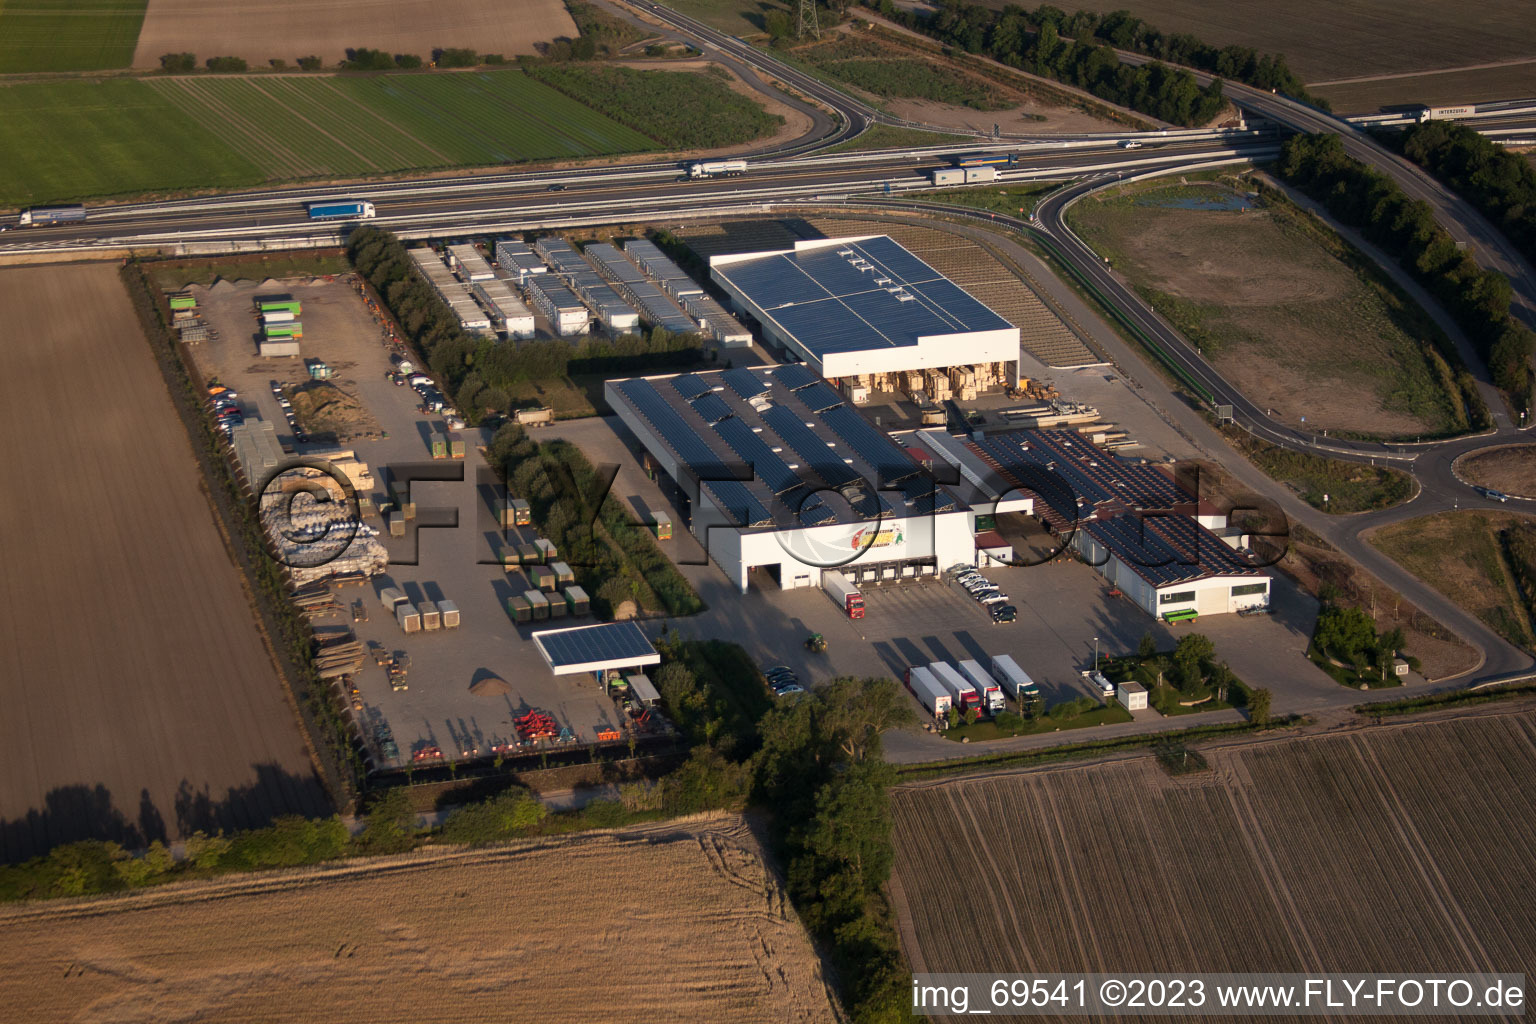 Mutterstadt im Bundesland Rheinland-Pfalz, Deutschland von der Drohne aus gesehen